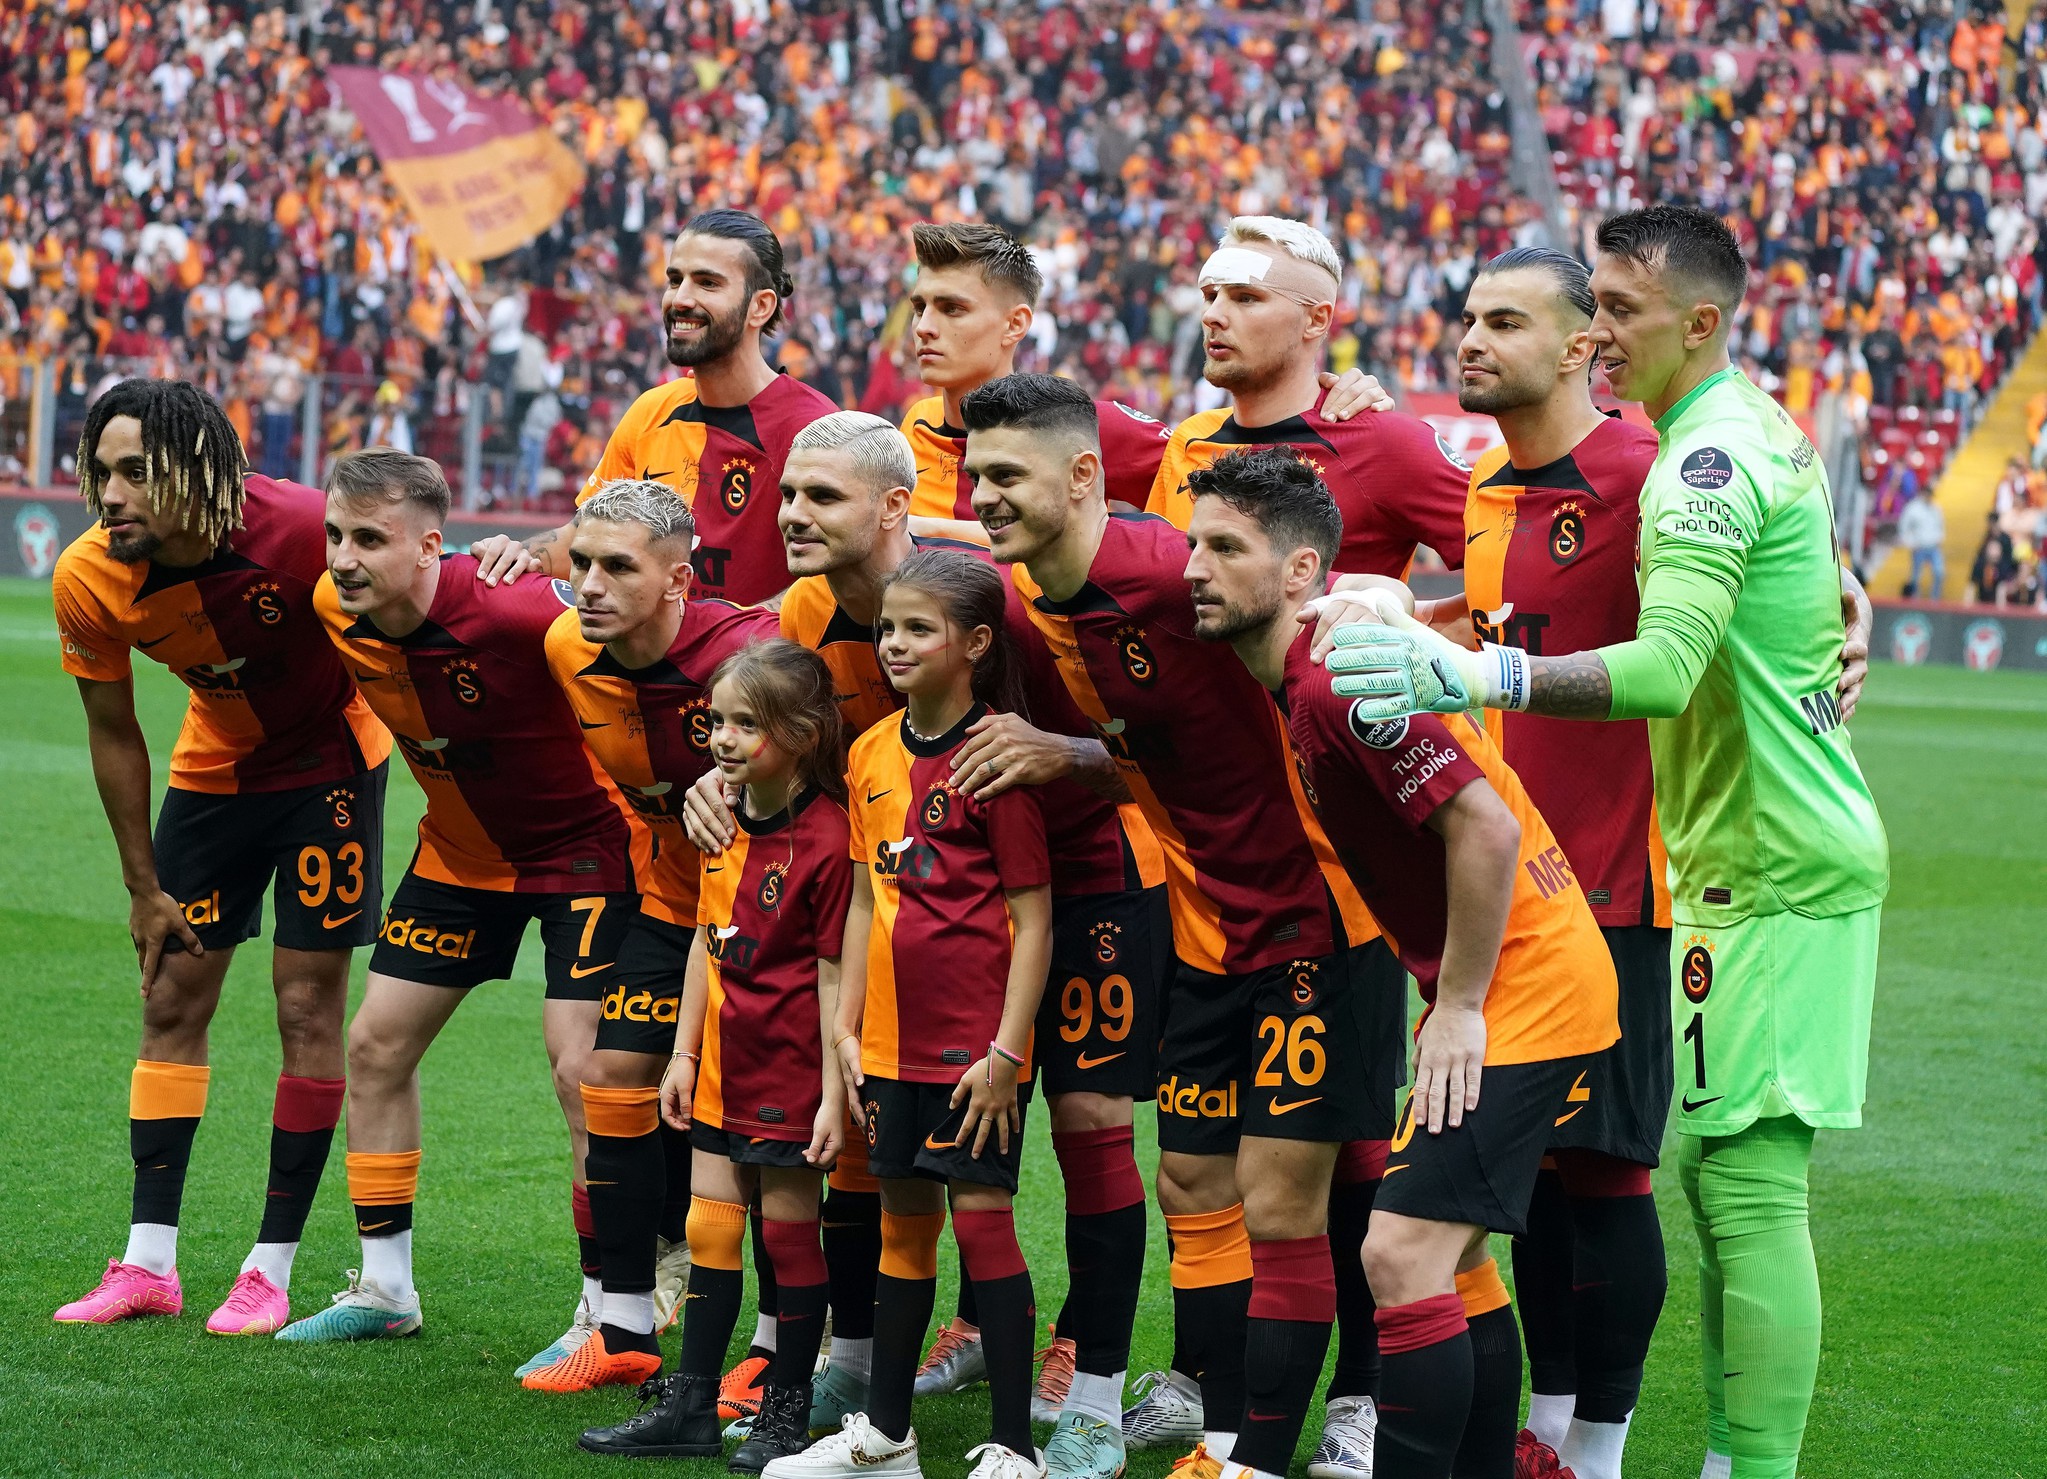 TRANSFER HABERİ: Galatasaray’a büyük şok! Yeni takımına imza atıyor